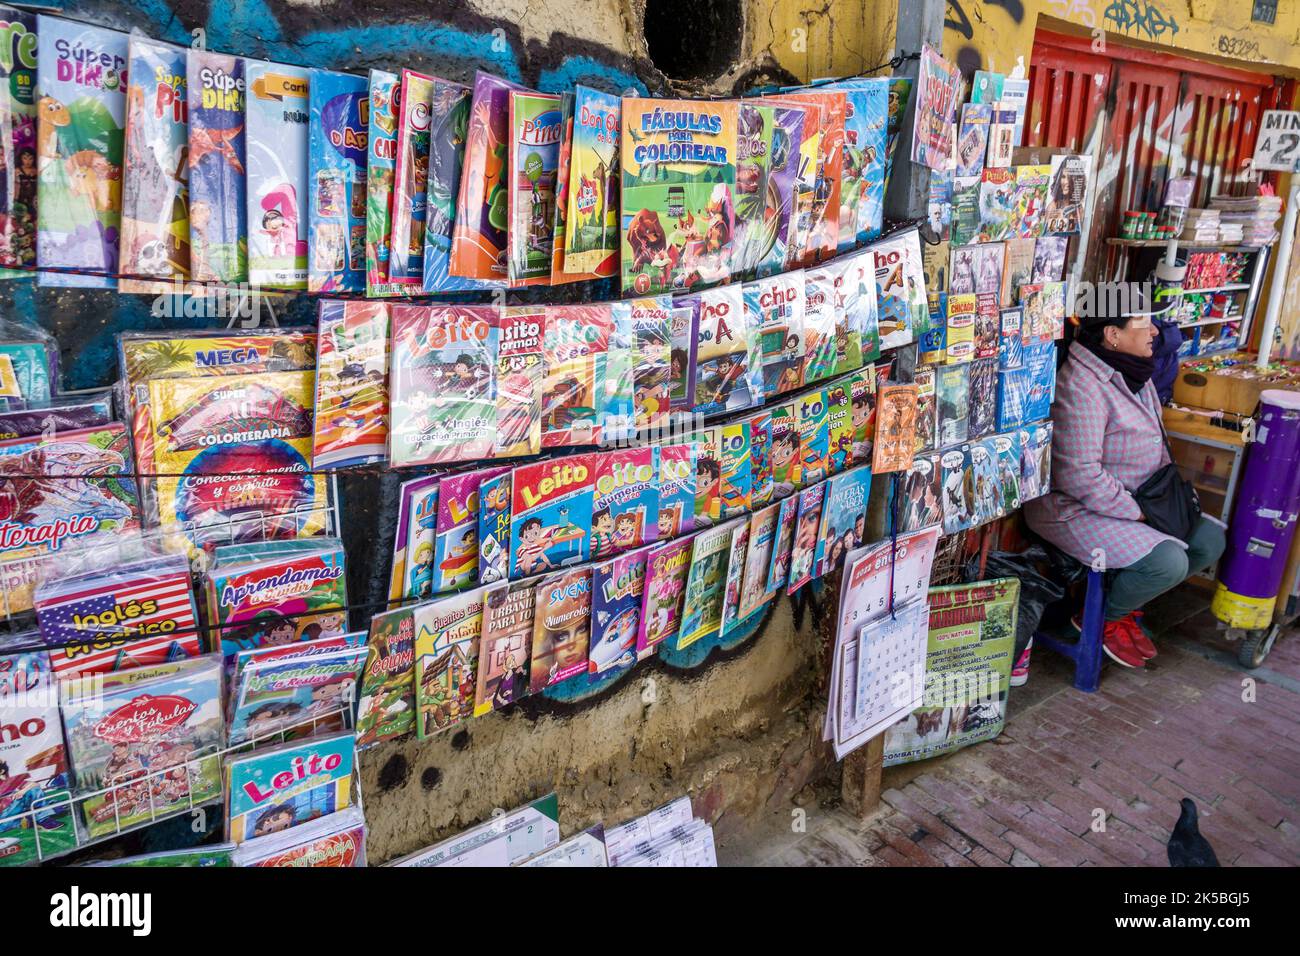 Bogota Colombia,Veracruz Calle 16 marciapiede display venditore libri testi pittorici libri illustrati per bambini in lingua spagnola, vicino a Santander Park Parq Foto Stock